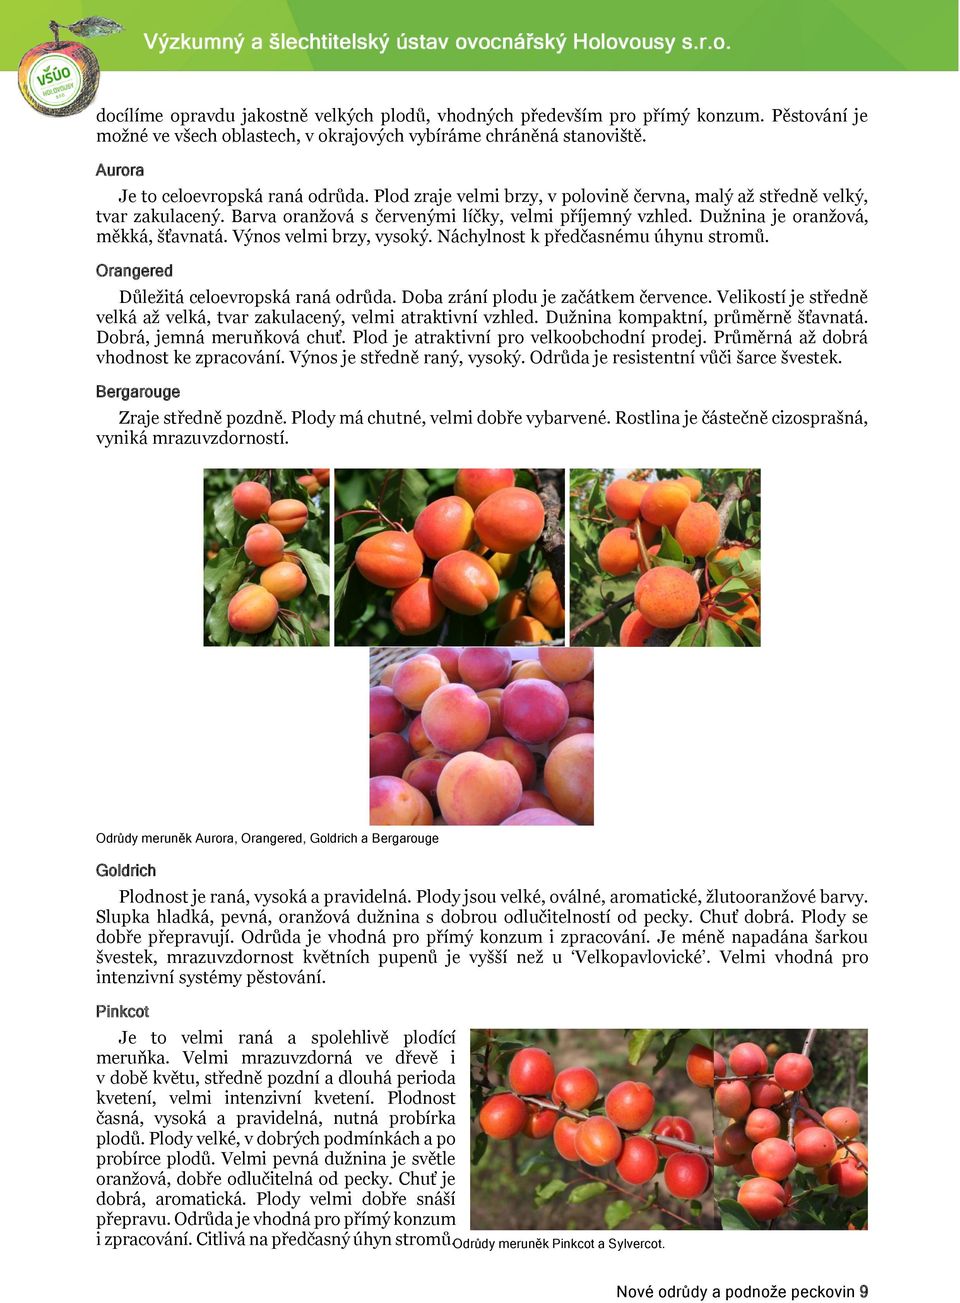 Výnos velmi brzy, vysoký. Náchylnost k předčasnému úhynu stromů. Orangered Důležitá celoevropská raná odrůda. Doba zrání plodu je začátkem července.